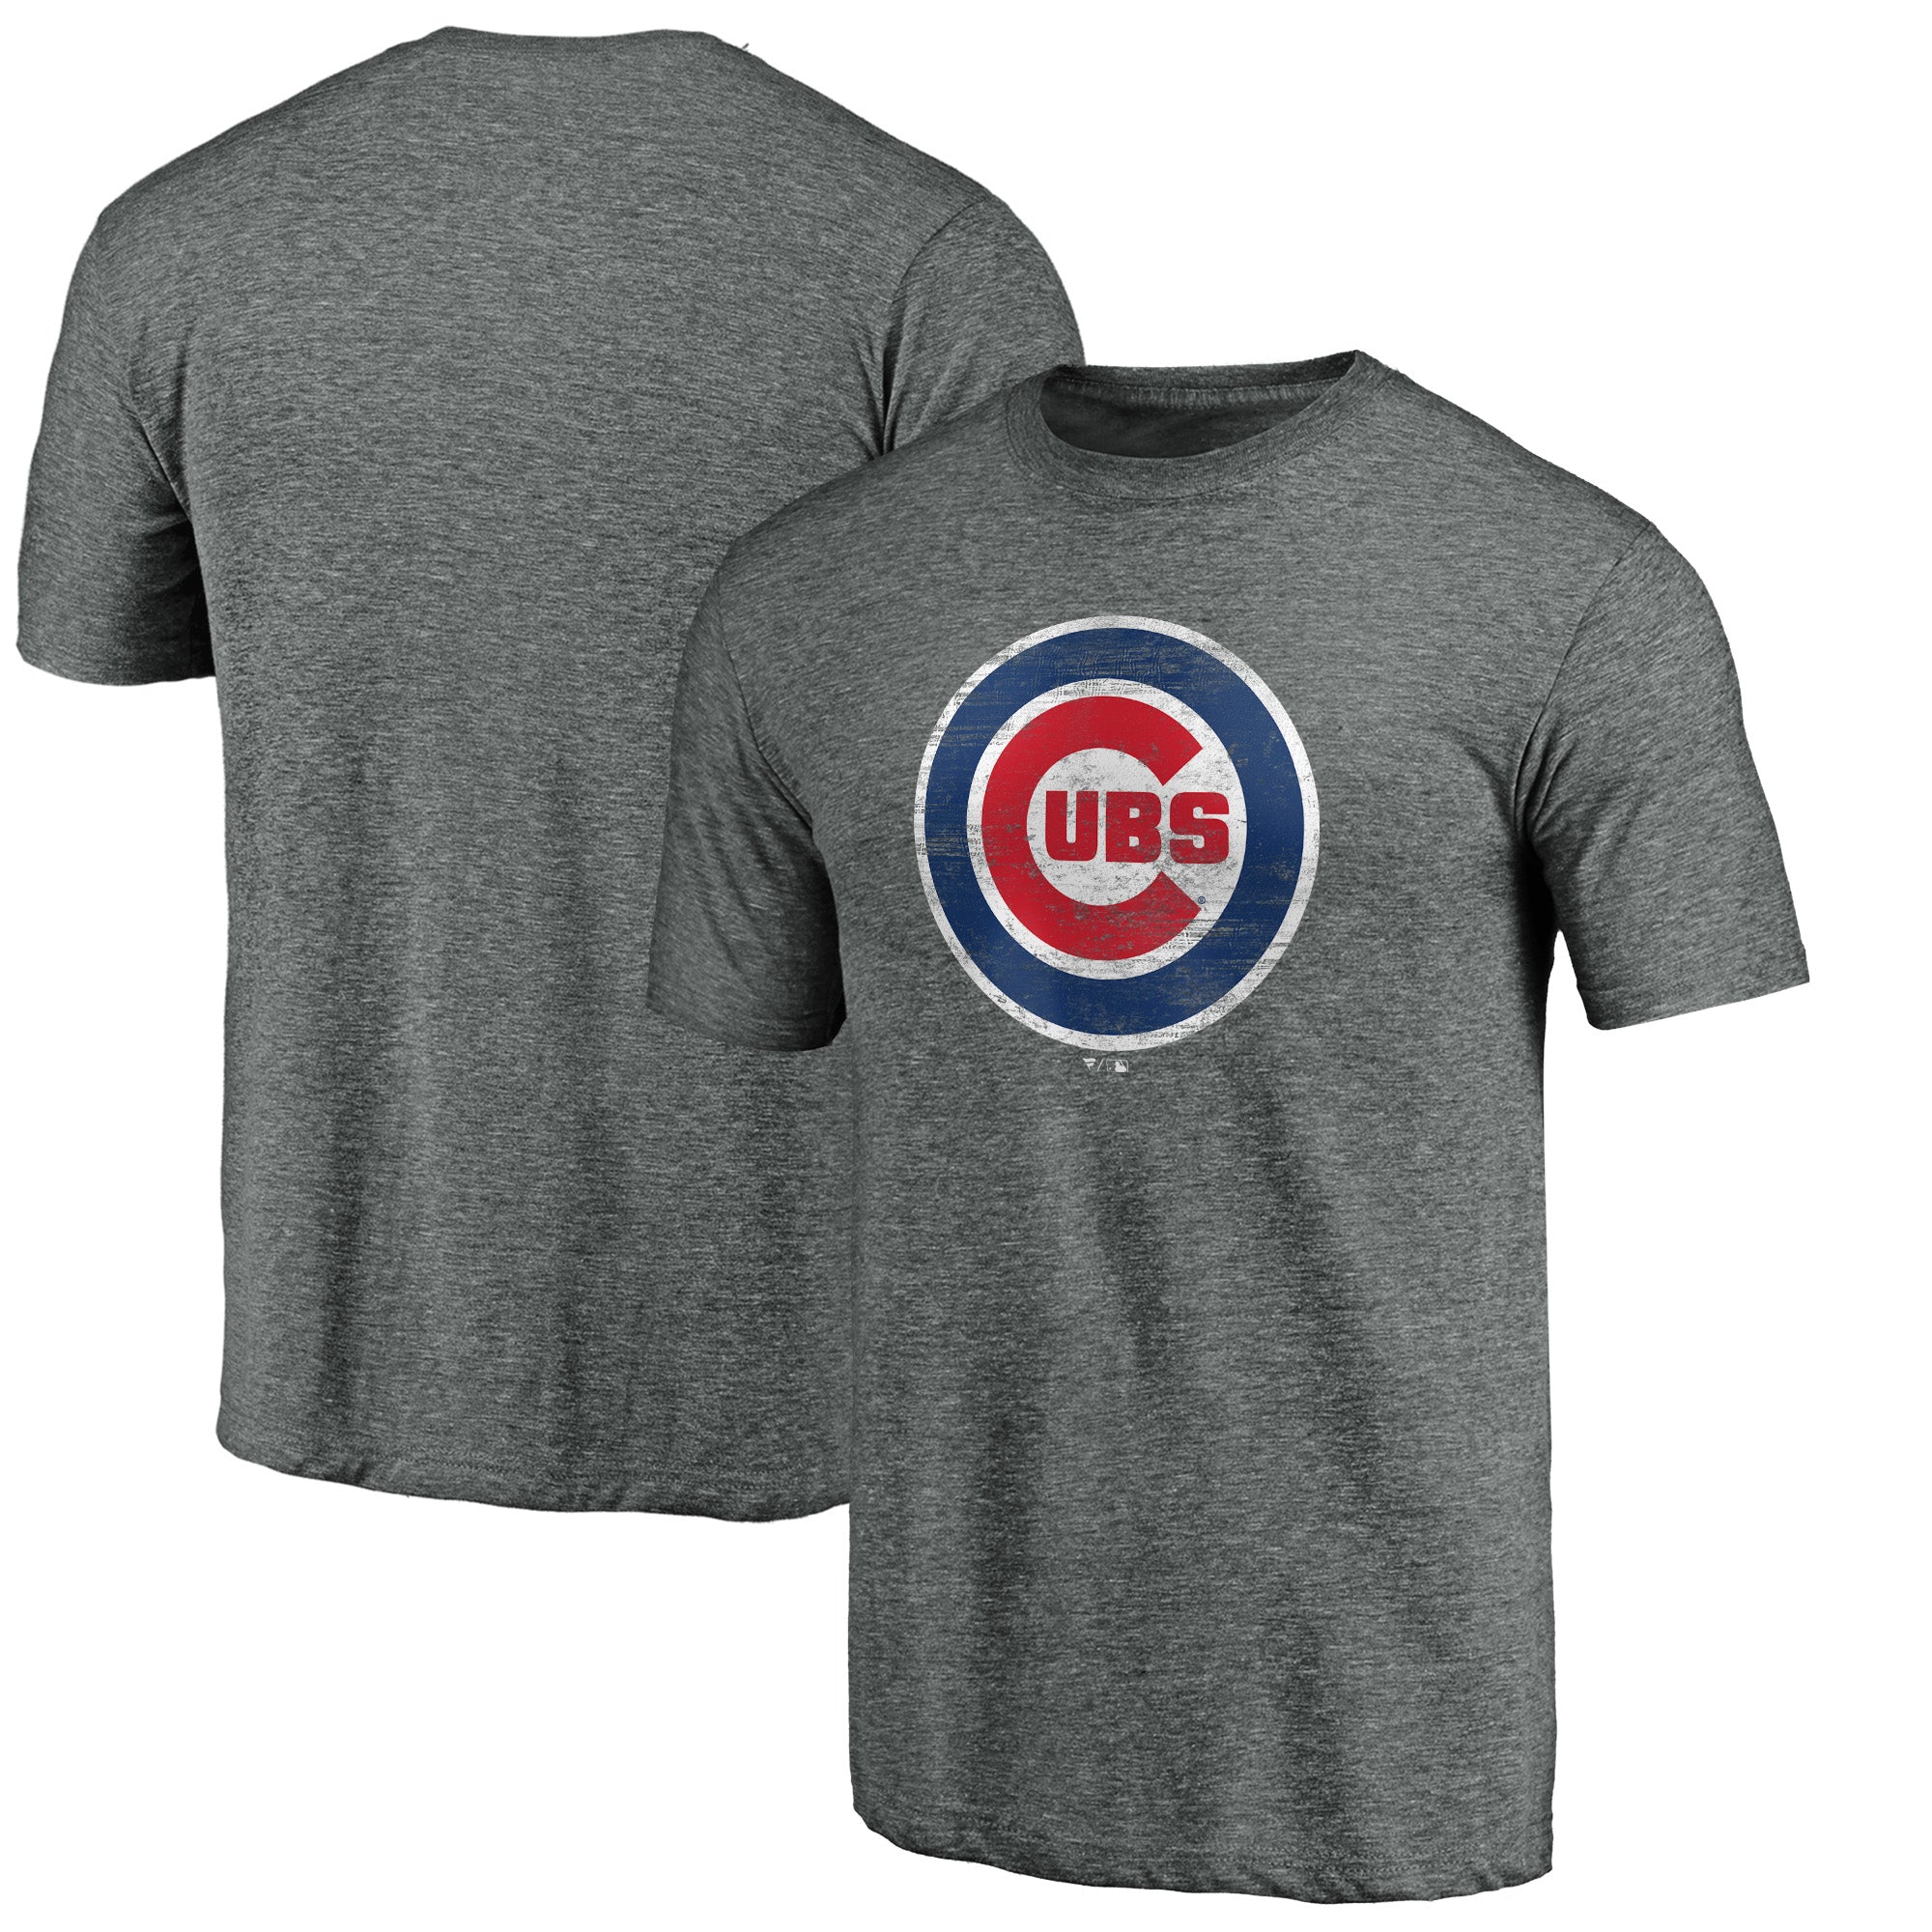 Cubs Brew T-Shirt